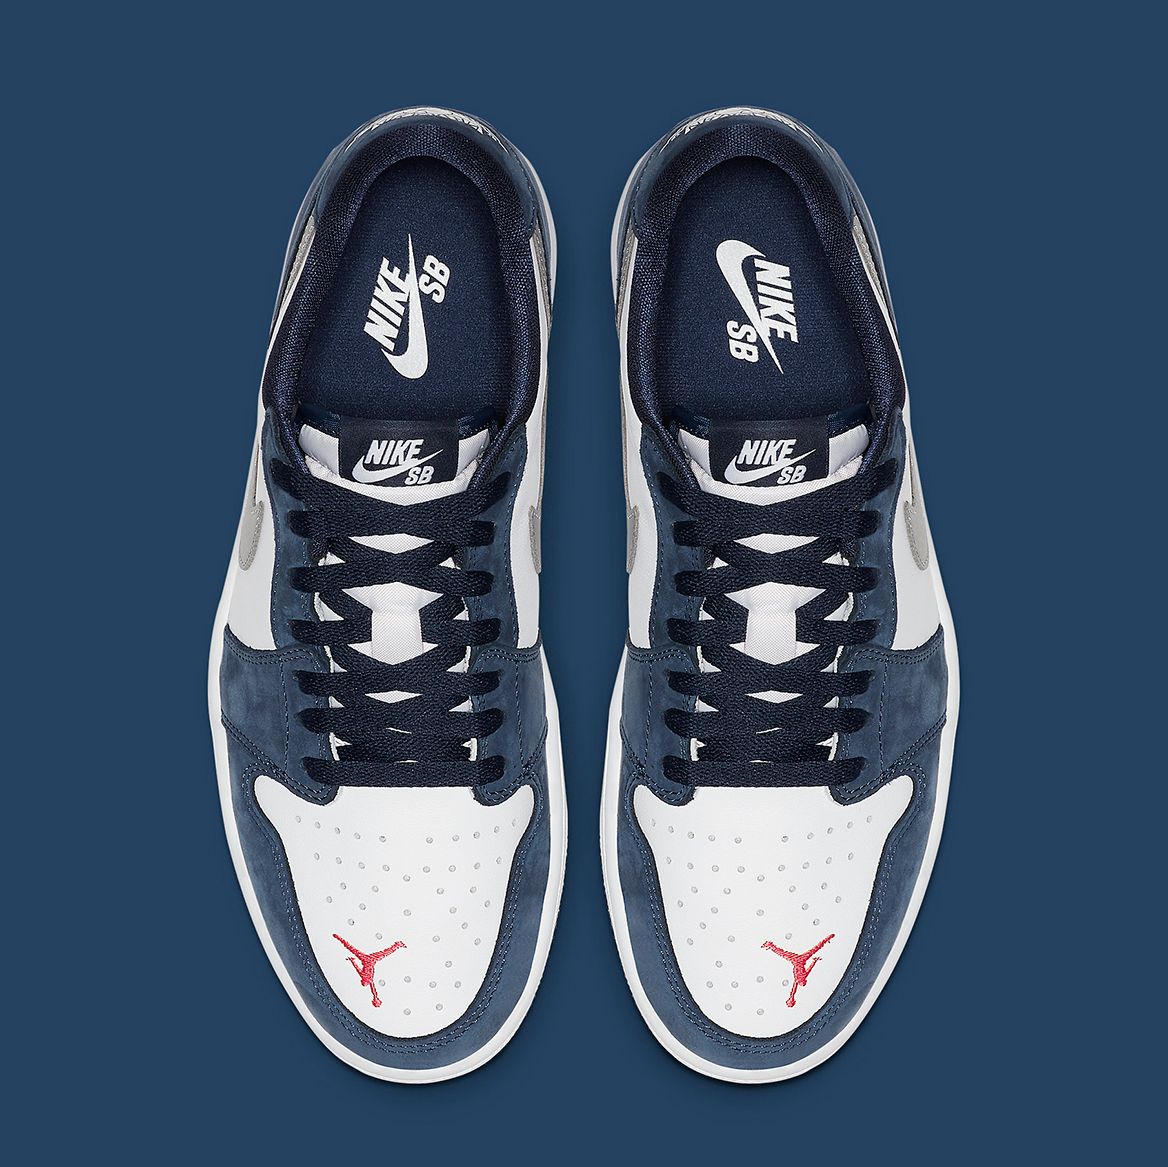 Eric Koston's Nike SB x Air Jordan 1 Low Releases June 17th | House of Heat°